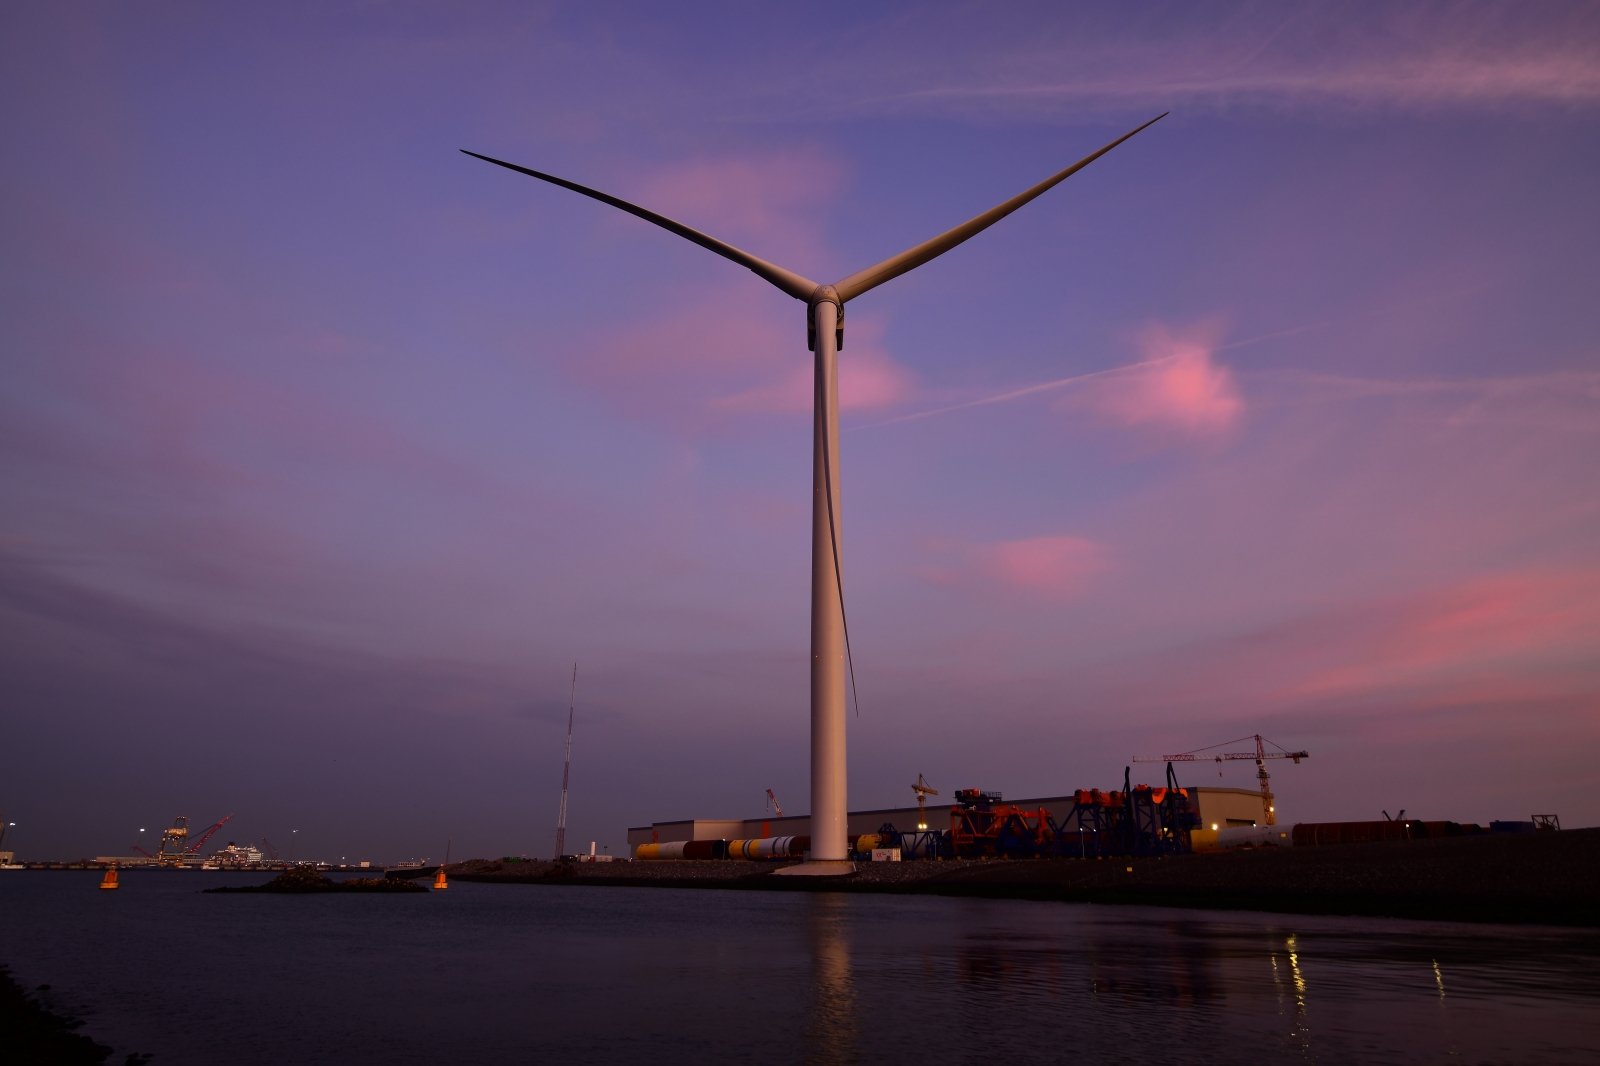 Latvijā aprīlī notiek lielākā vēja enerģijas konference Baltijā